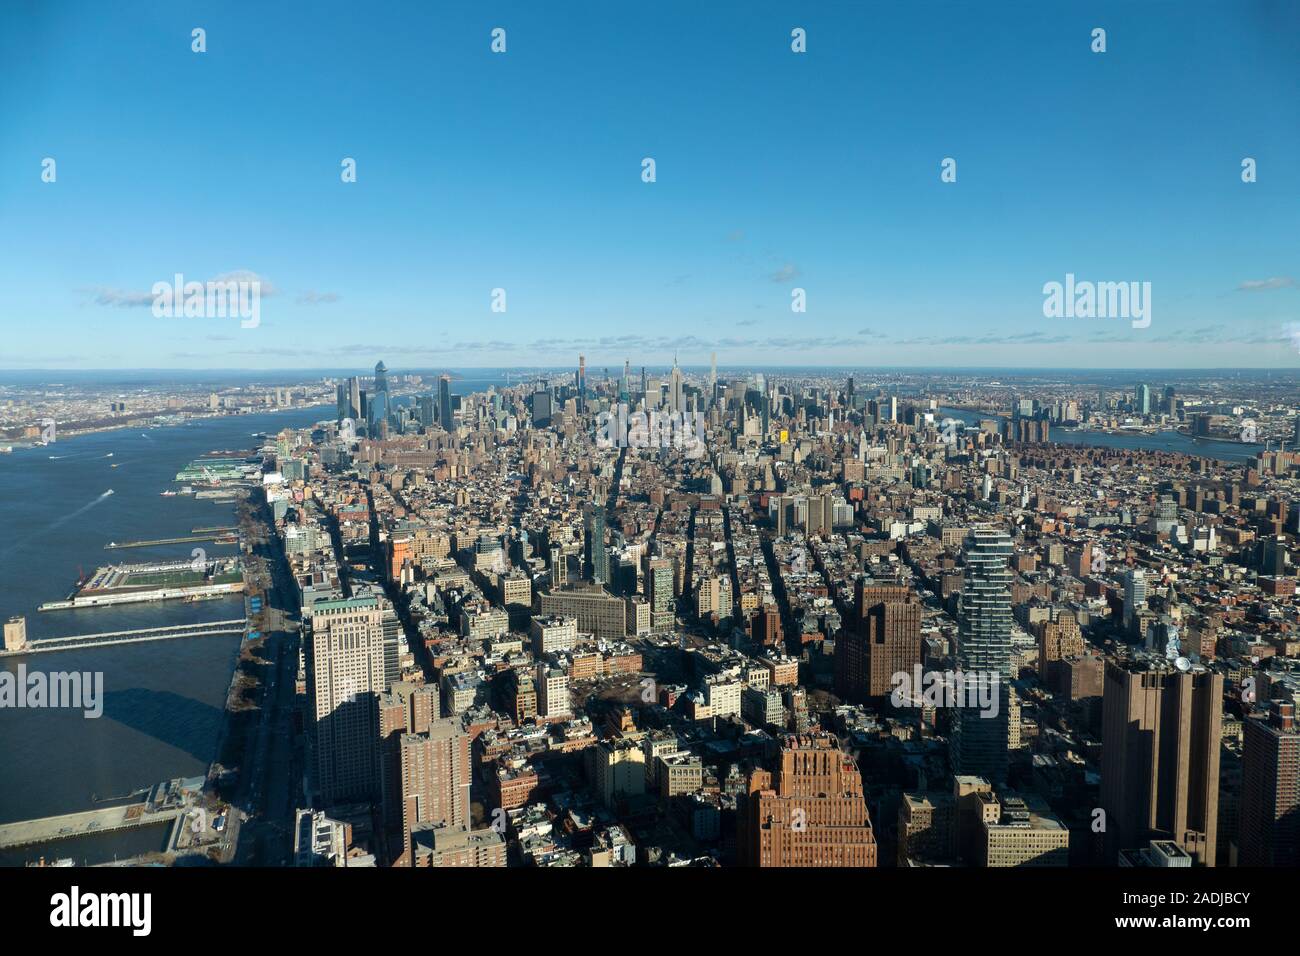 La splendida skyline di Midtown Manhattan Island tra cui l'Empire State Building e il Chrysler Building di New York City, Stati Uniti d'America Foto Stock